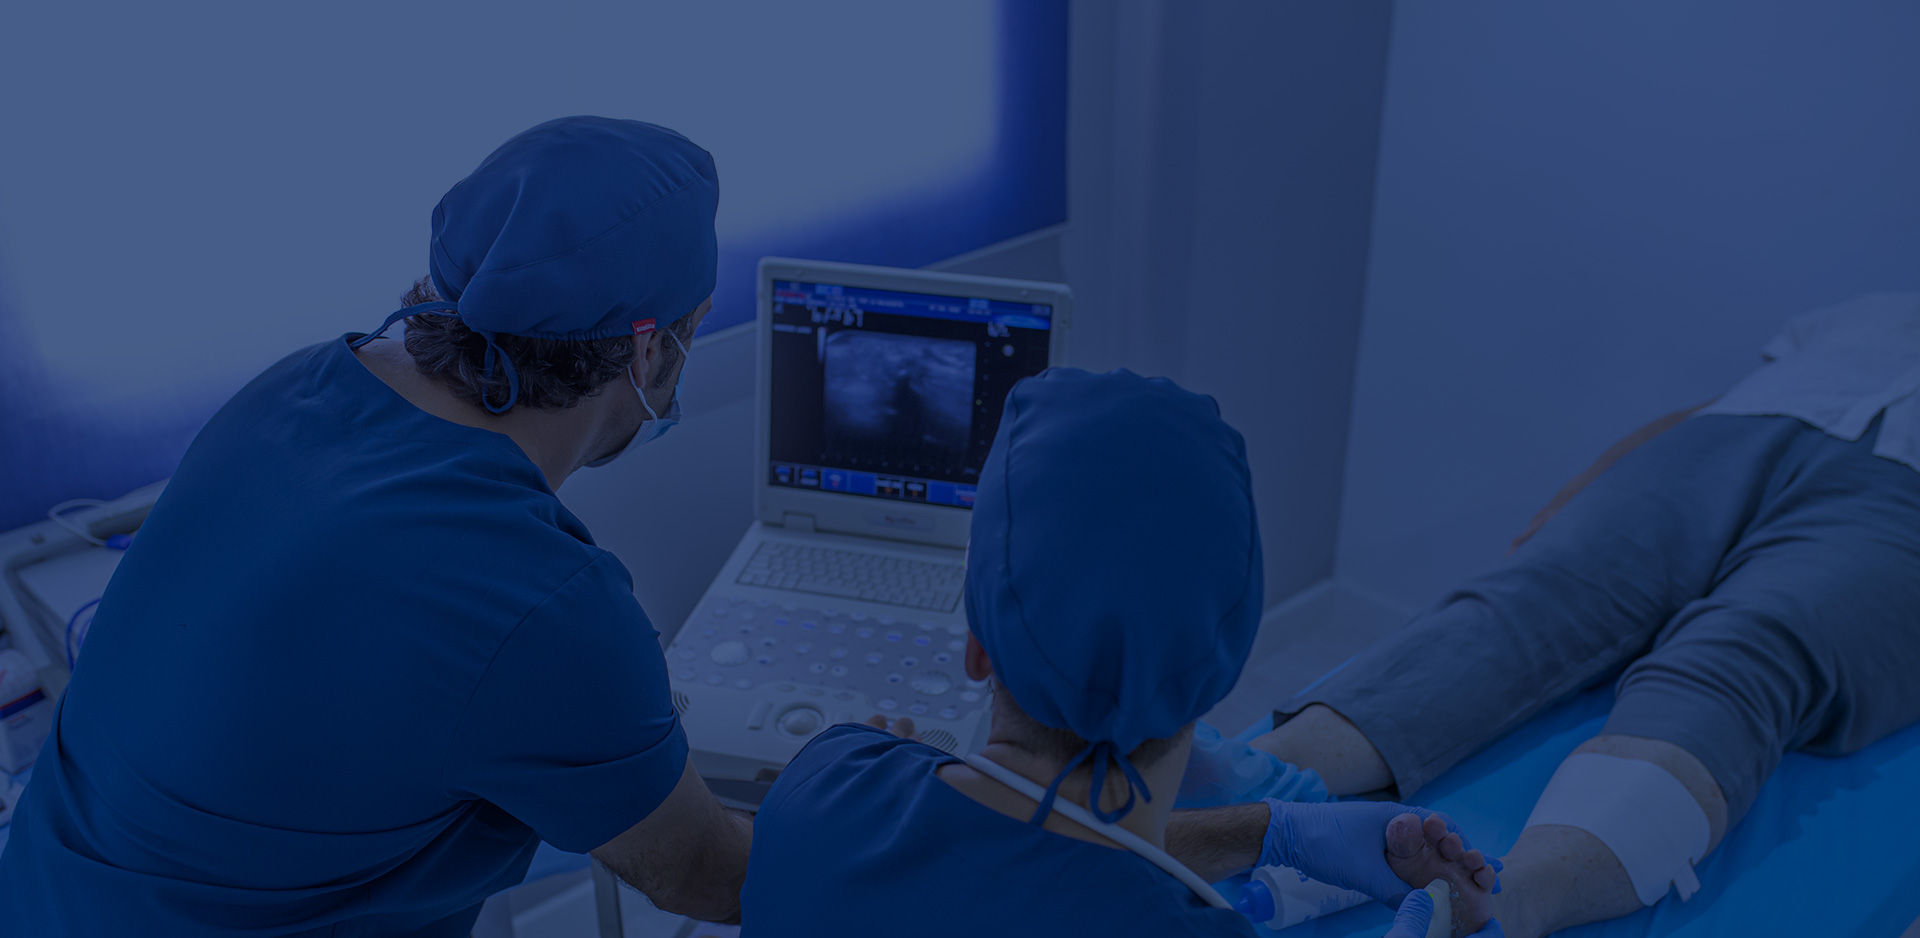 Ultrasound surgery